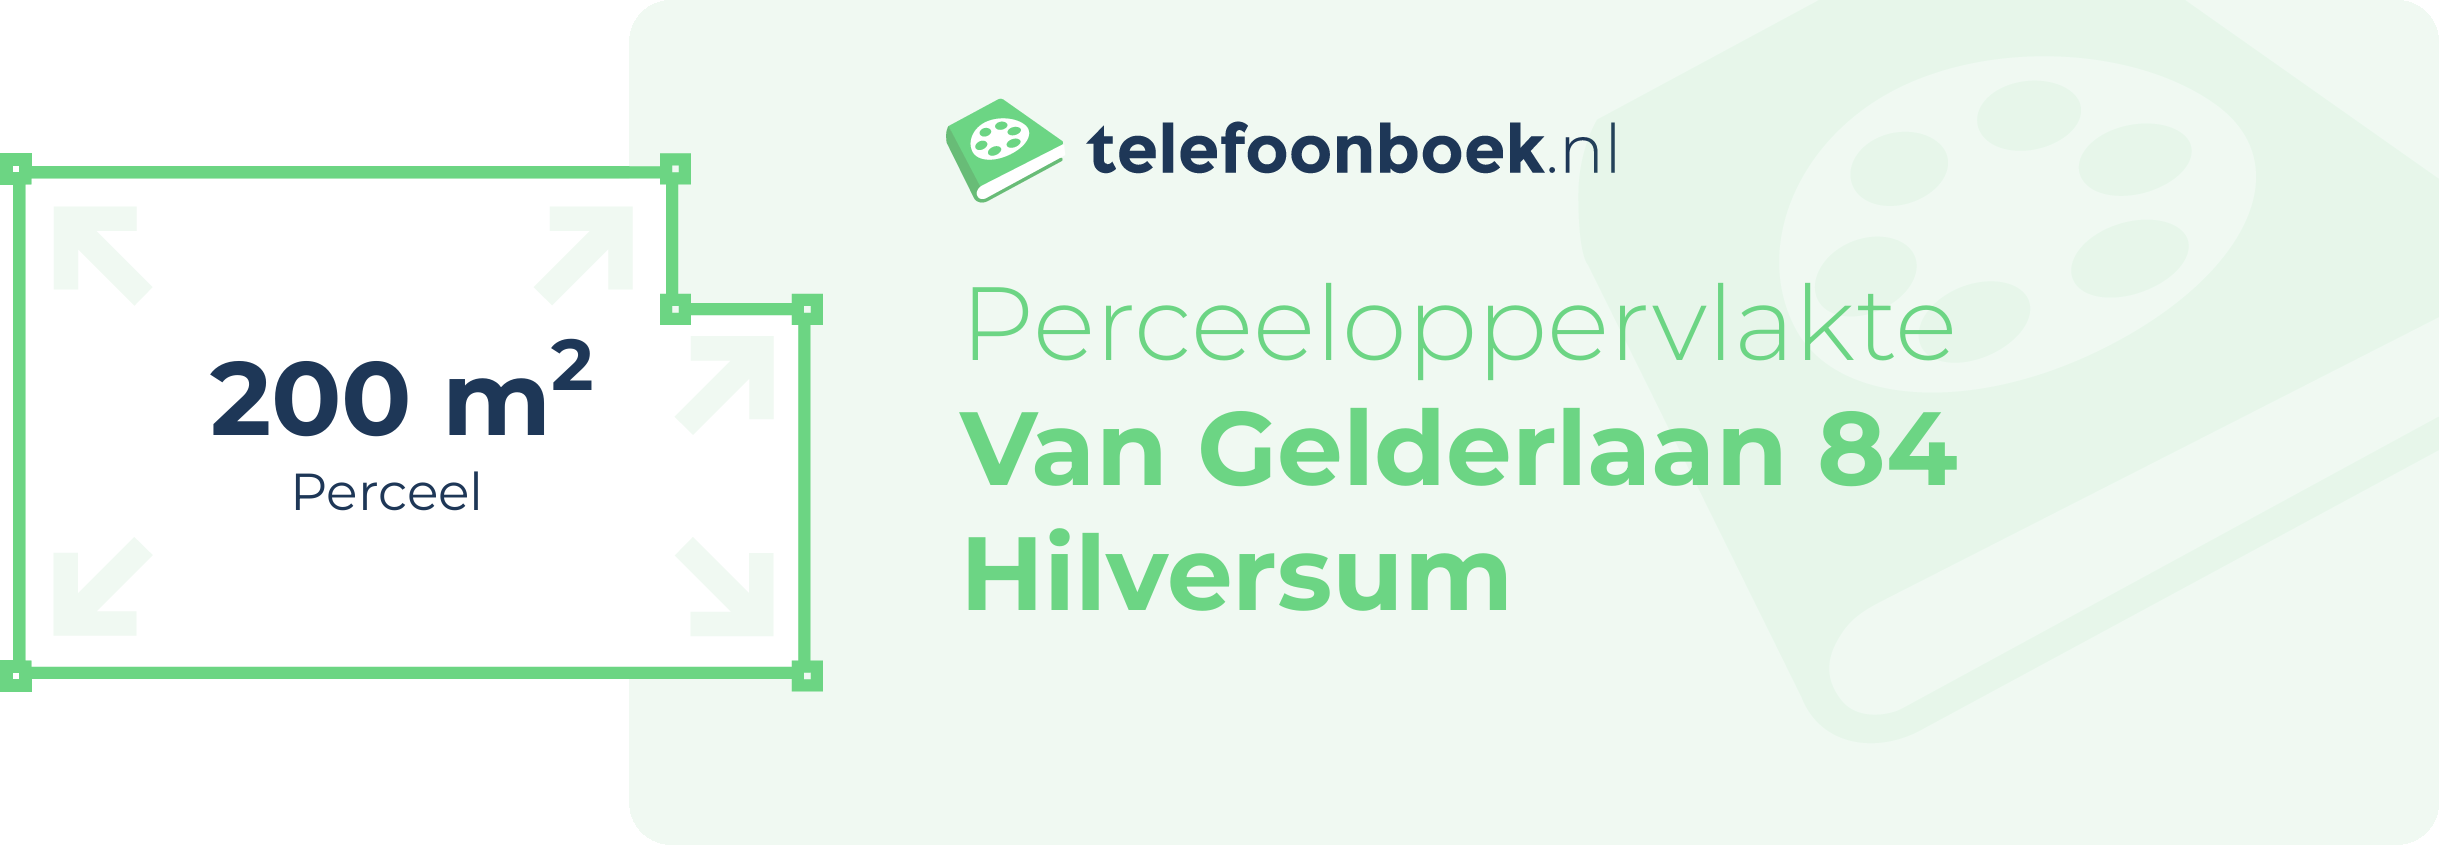 Perceeloppervlakte Van Gelderlaan 84 Hilversum